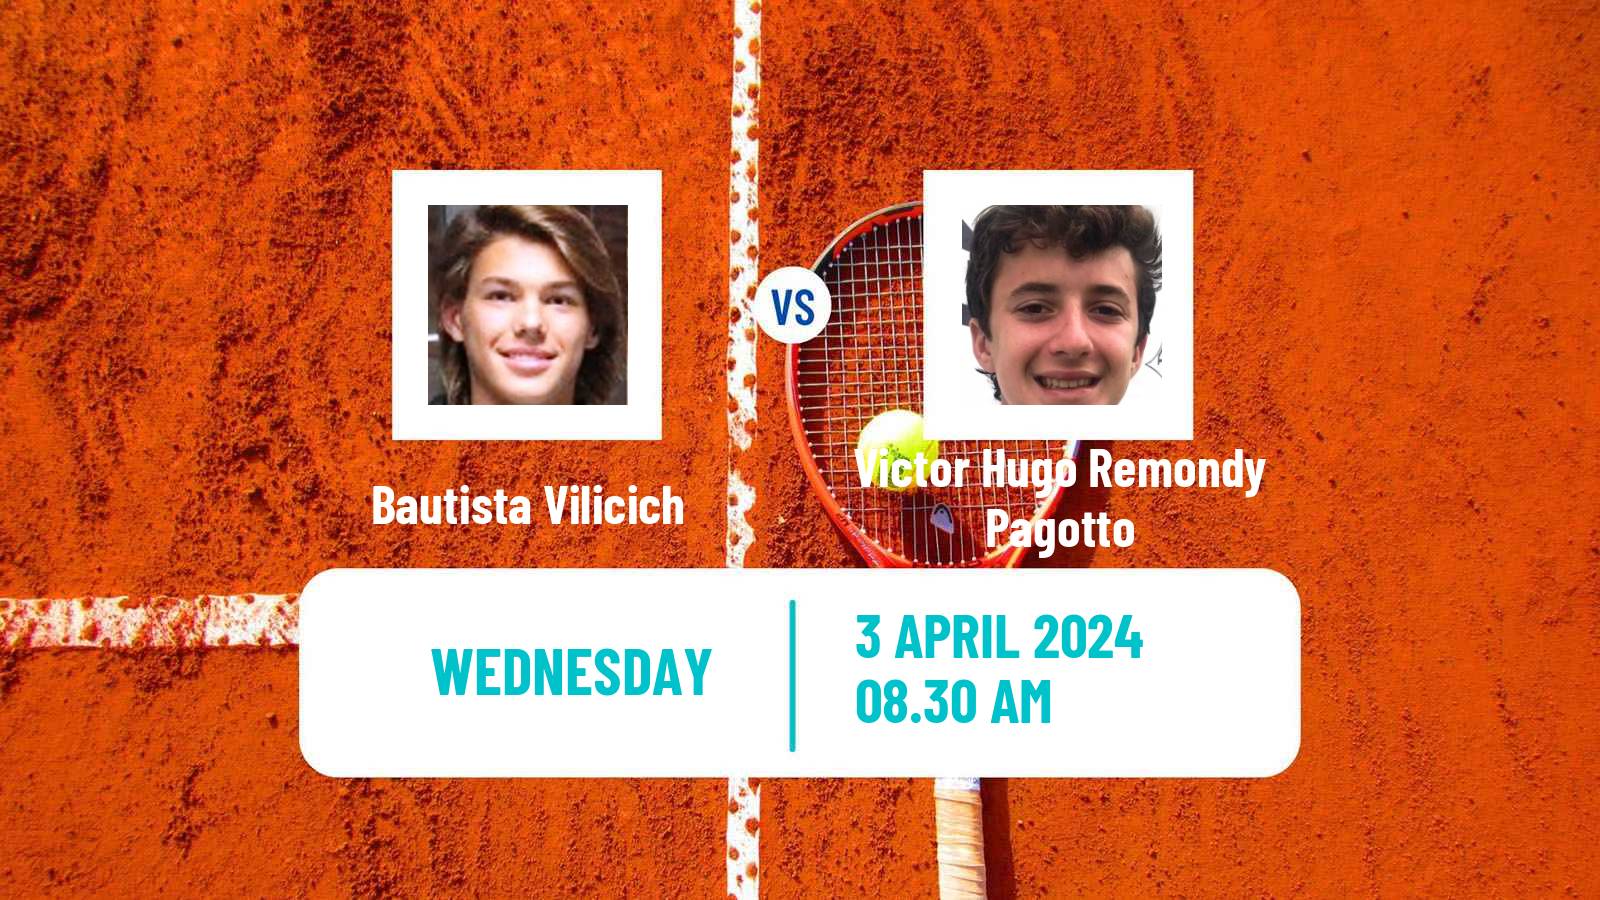 Tennis ITF M15 Bragado 2 Men Bautista Vilicich - Victor Hugo Remondy Pagotto